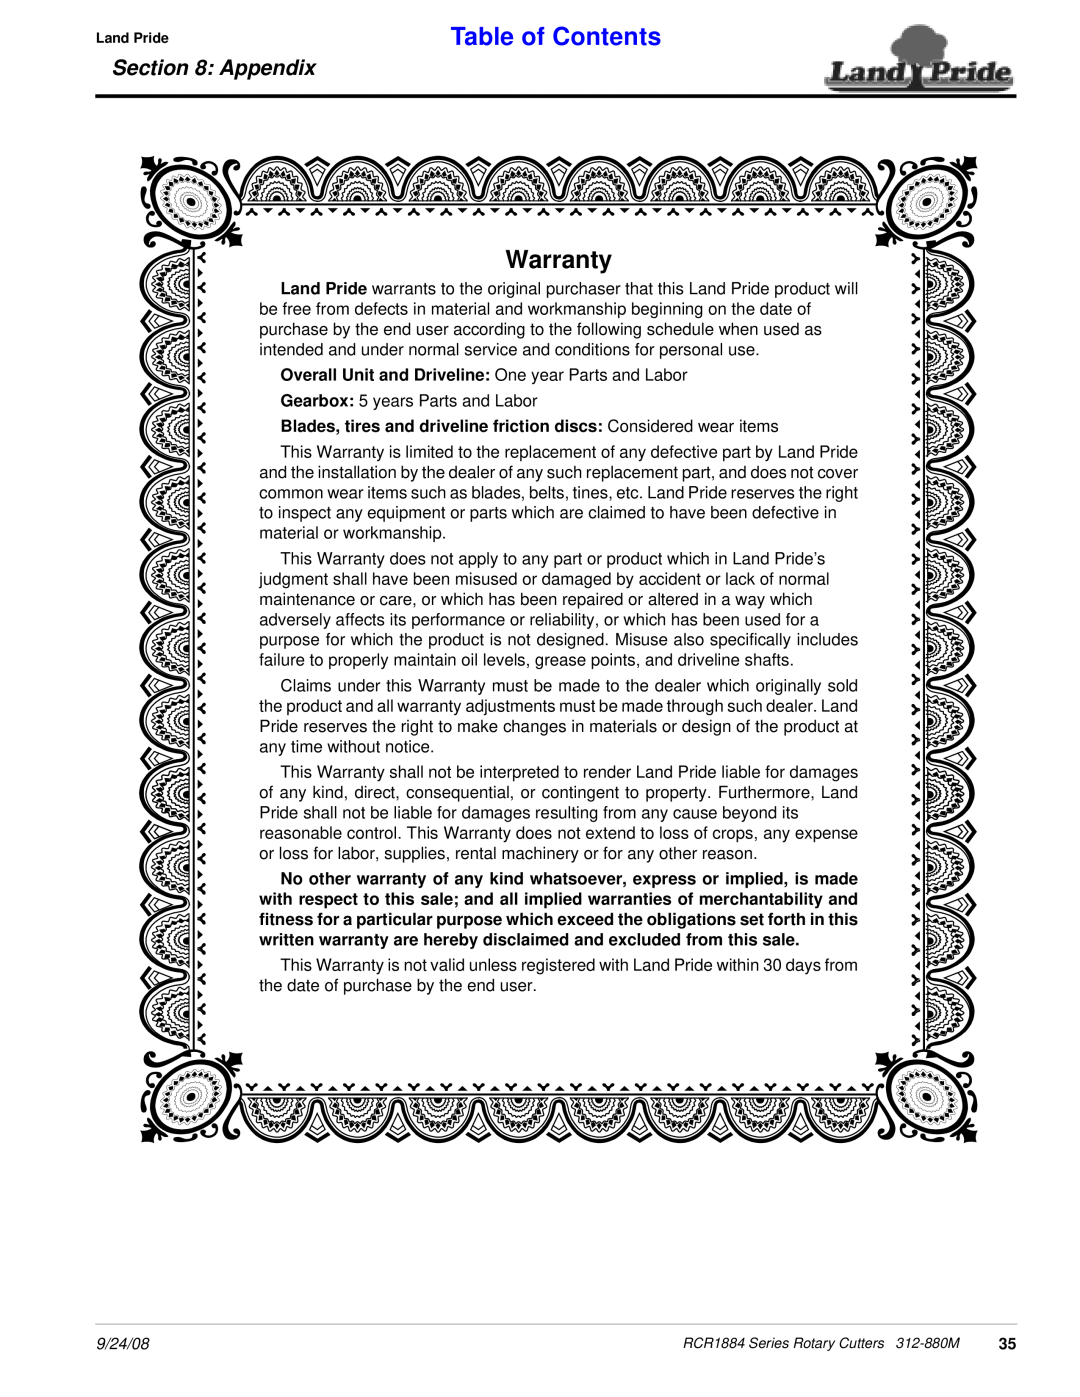 Land Pride RCR1884 manual Warranty, Table of Contents, Appendix 